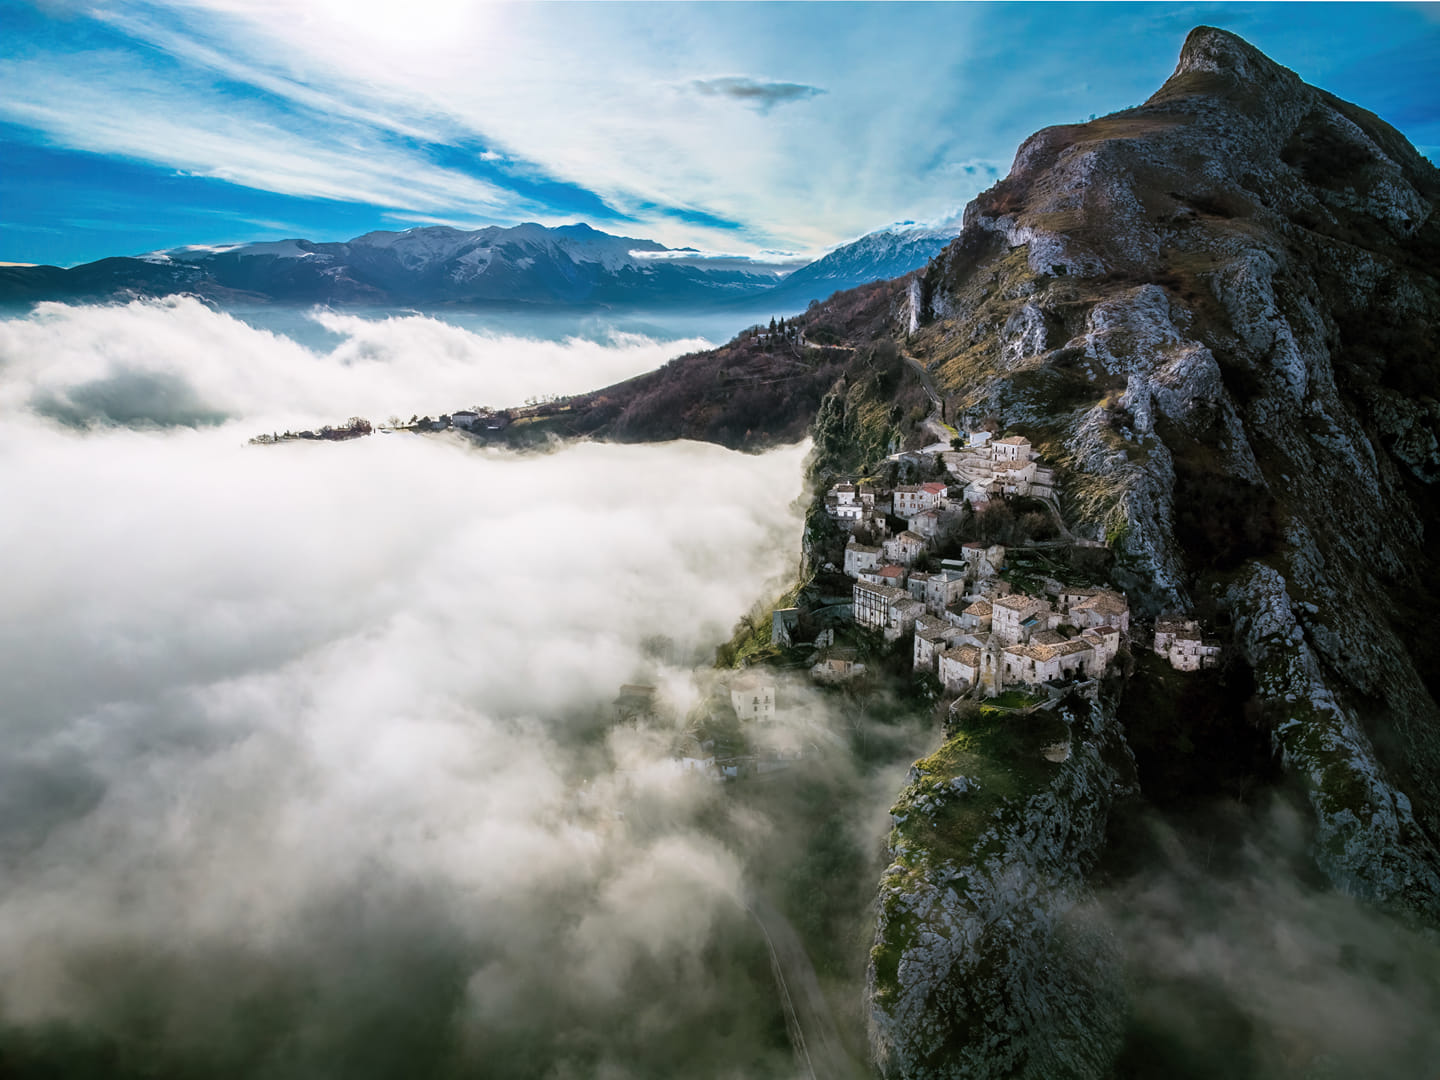 Abruzzo. Corvara, il Borgo fantasma "arrampicato" che si affaccia su un mare di nuvole